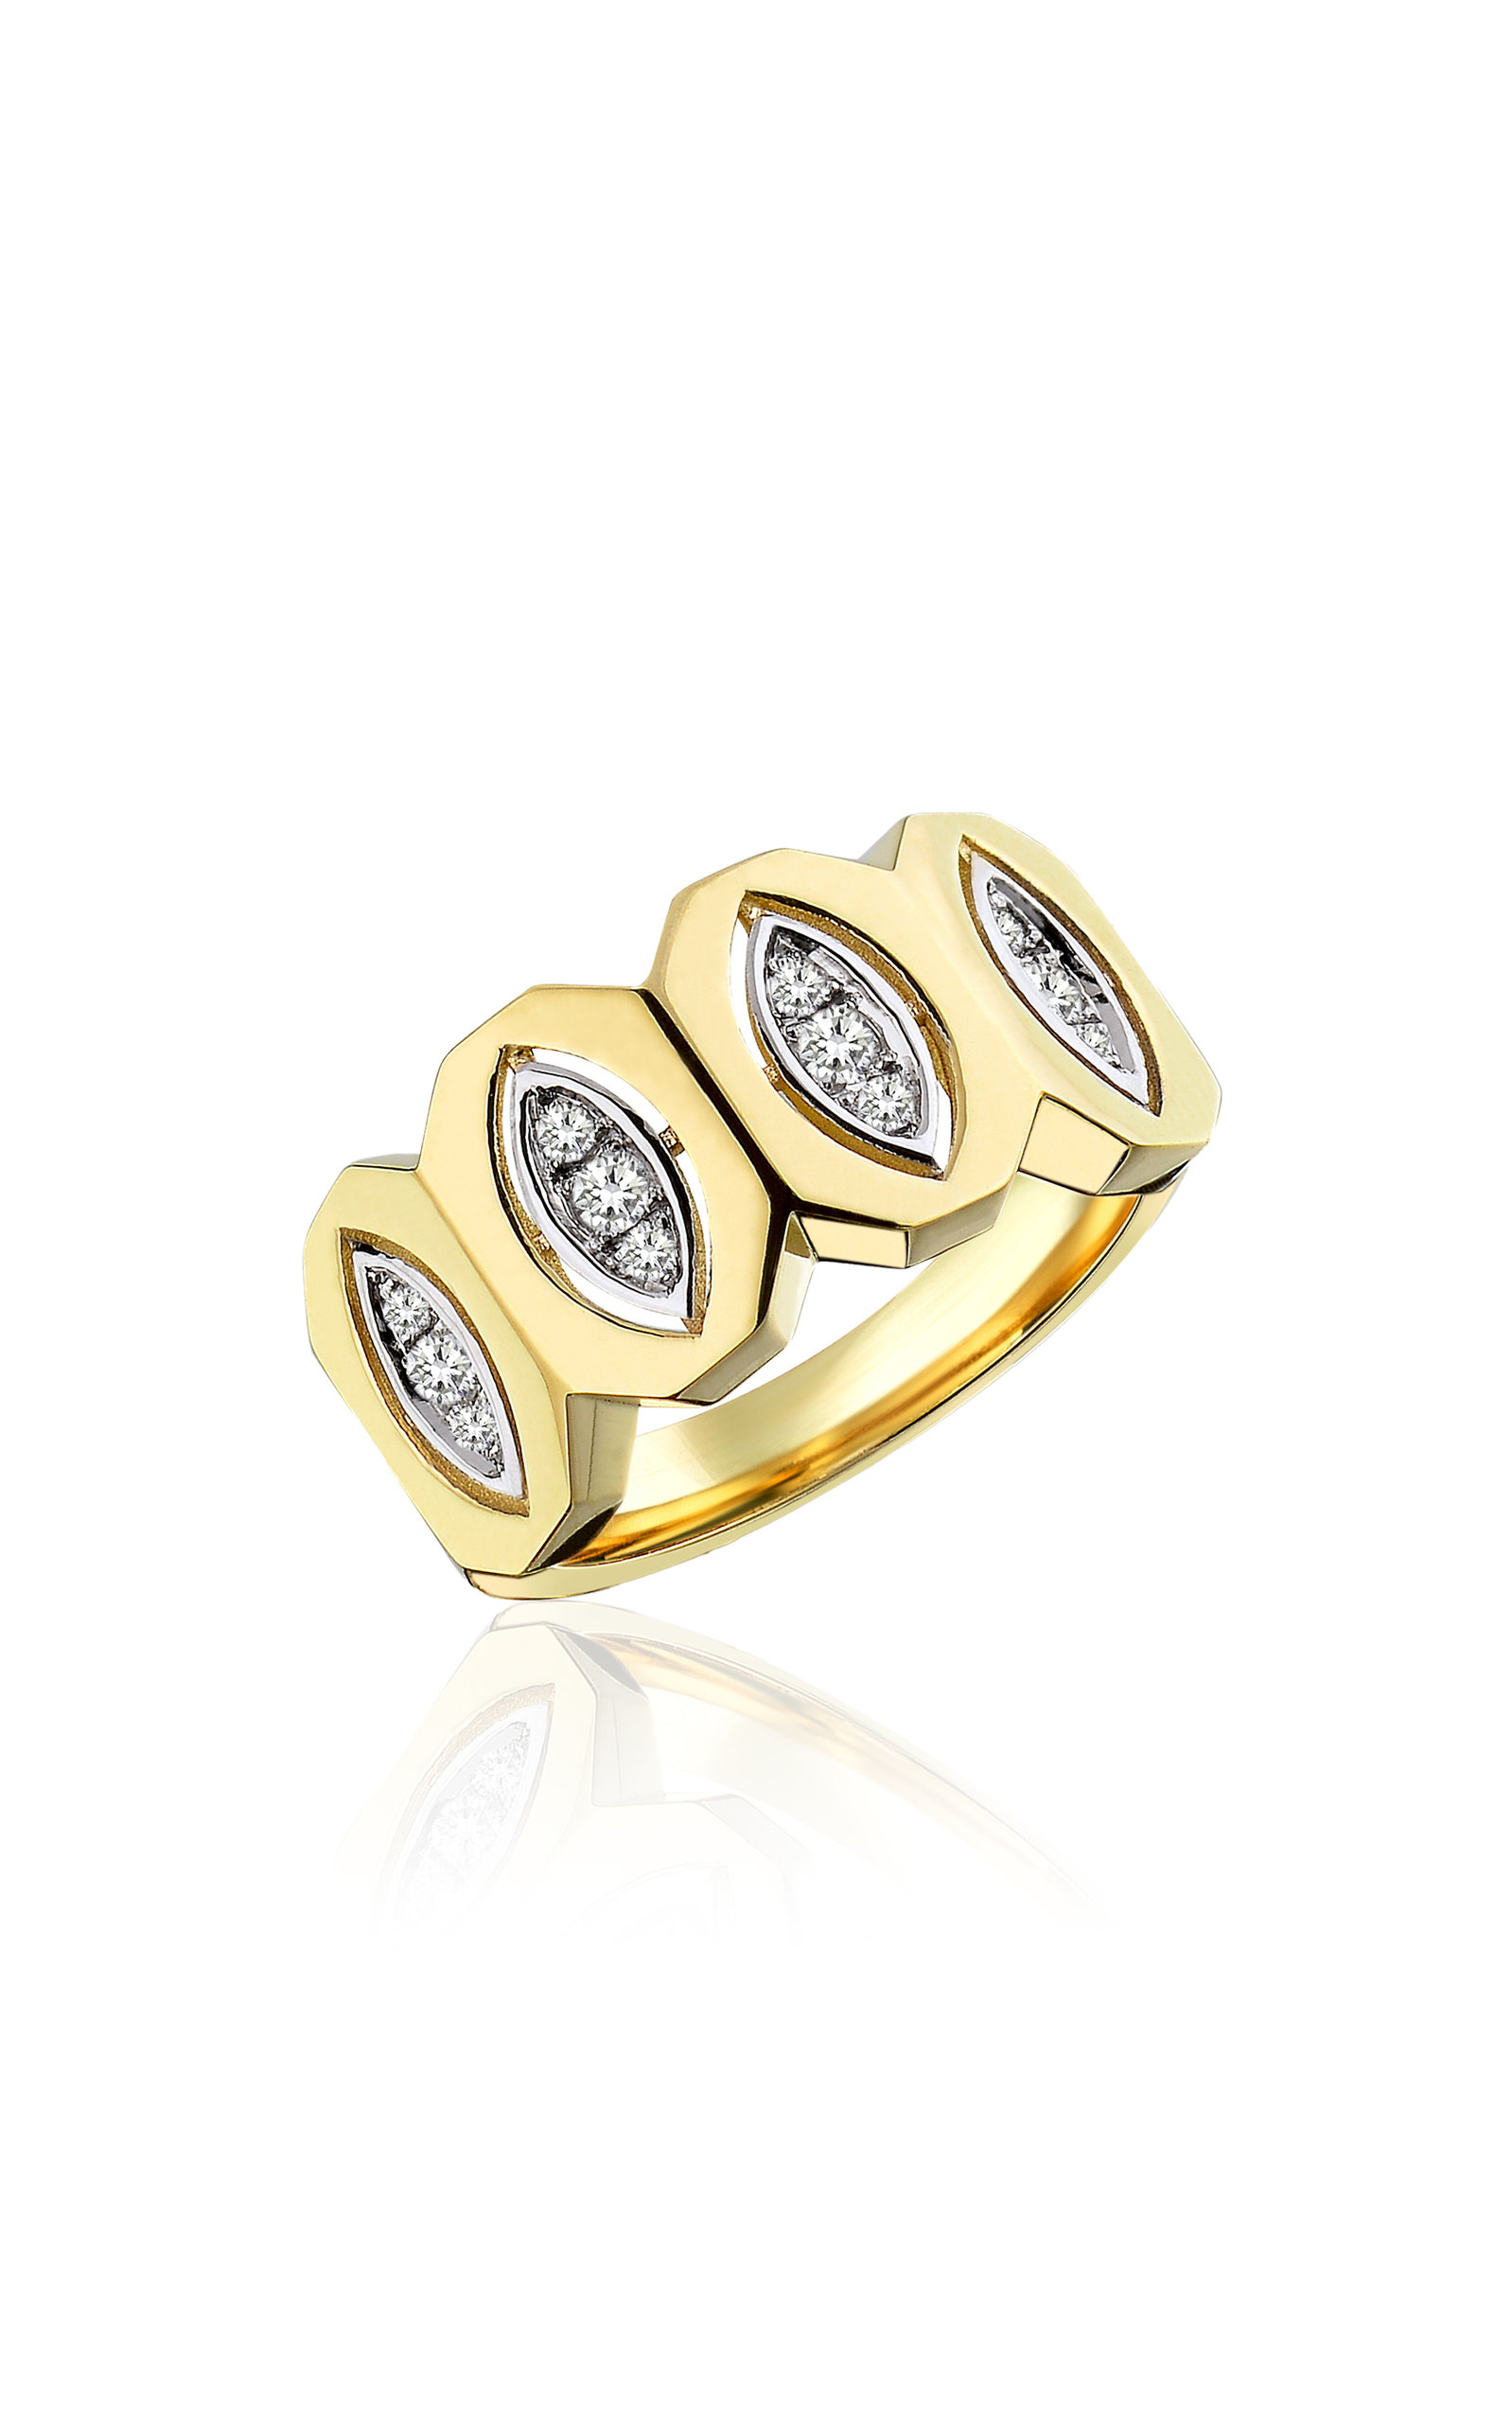 MELIS GORAL WOMEN'S THE FOCUS 14K YELLOW GOLD DIAMOND RING